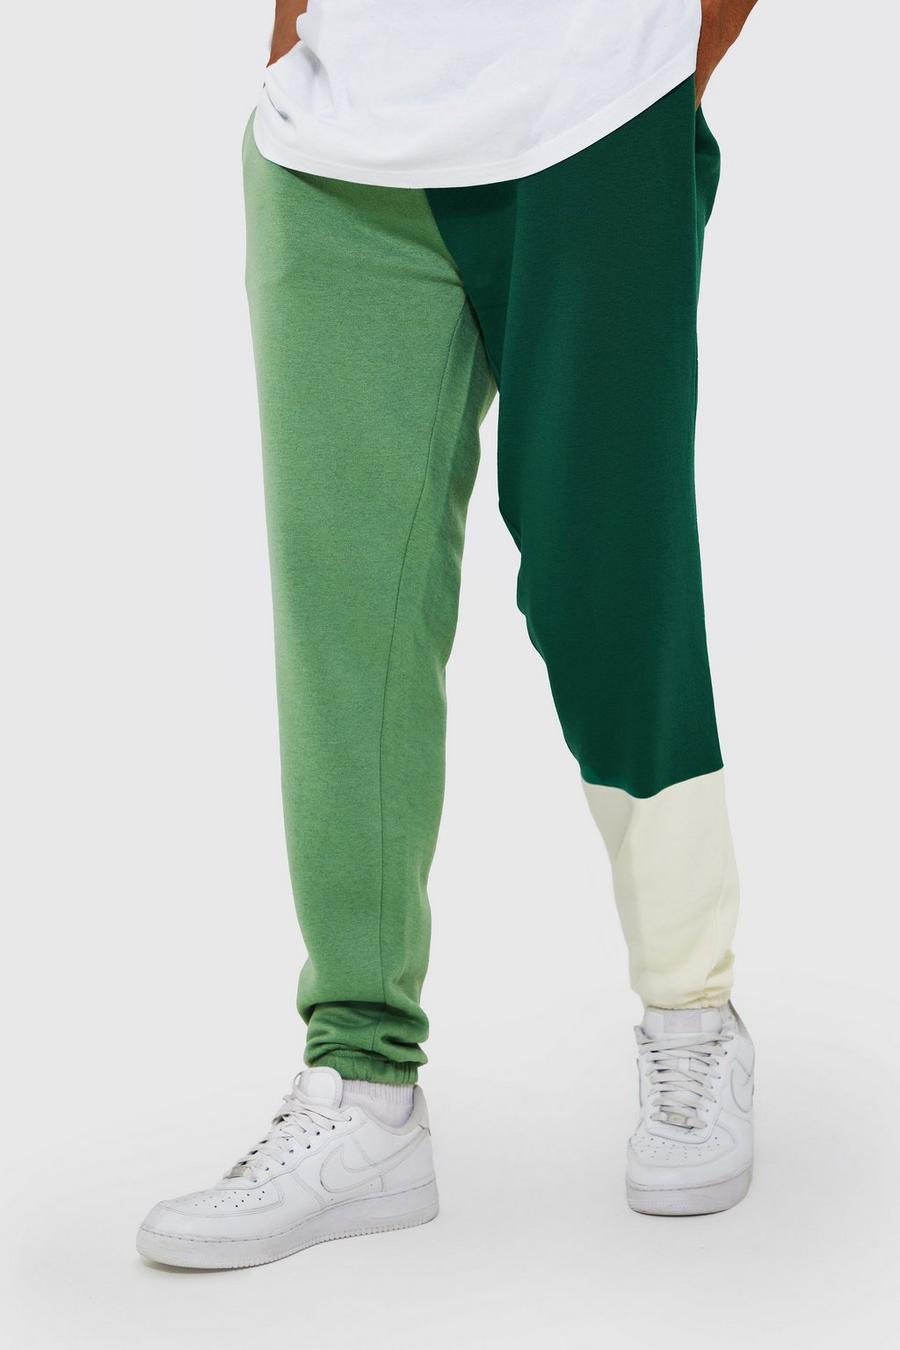 Green verde מכנסי ריצה קולור בלוק עם טלאים, לגברים גבוהים